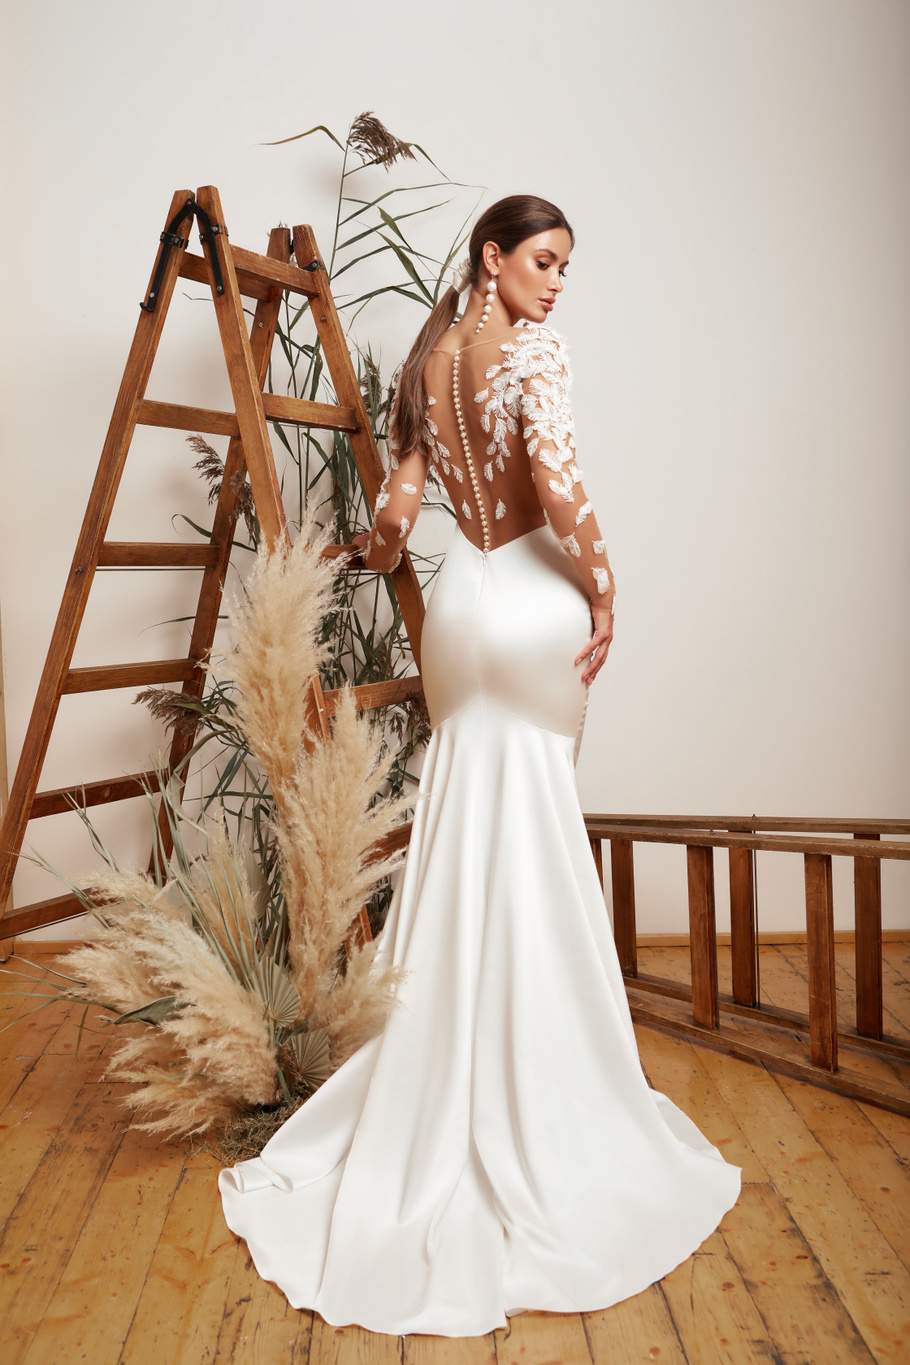 Купить свадебное платье «Юдит» Мэрри Марк из коллекции 2020 года в Нижнем Новгороде